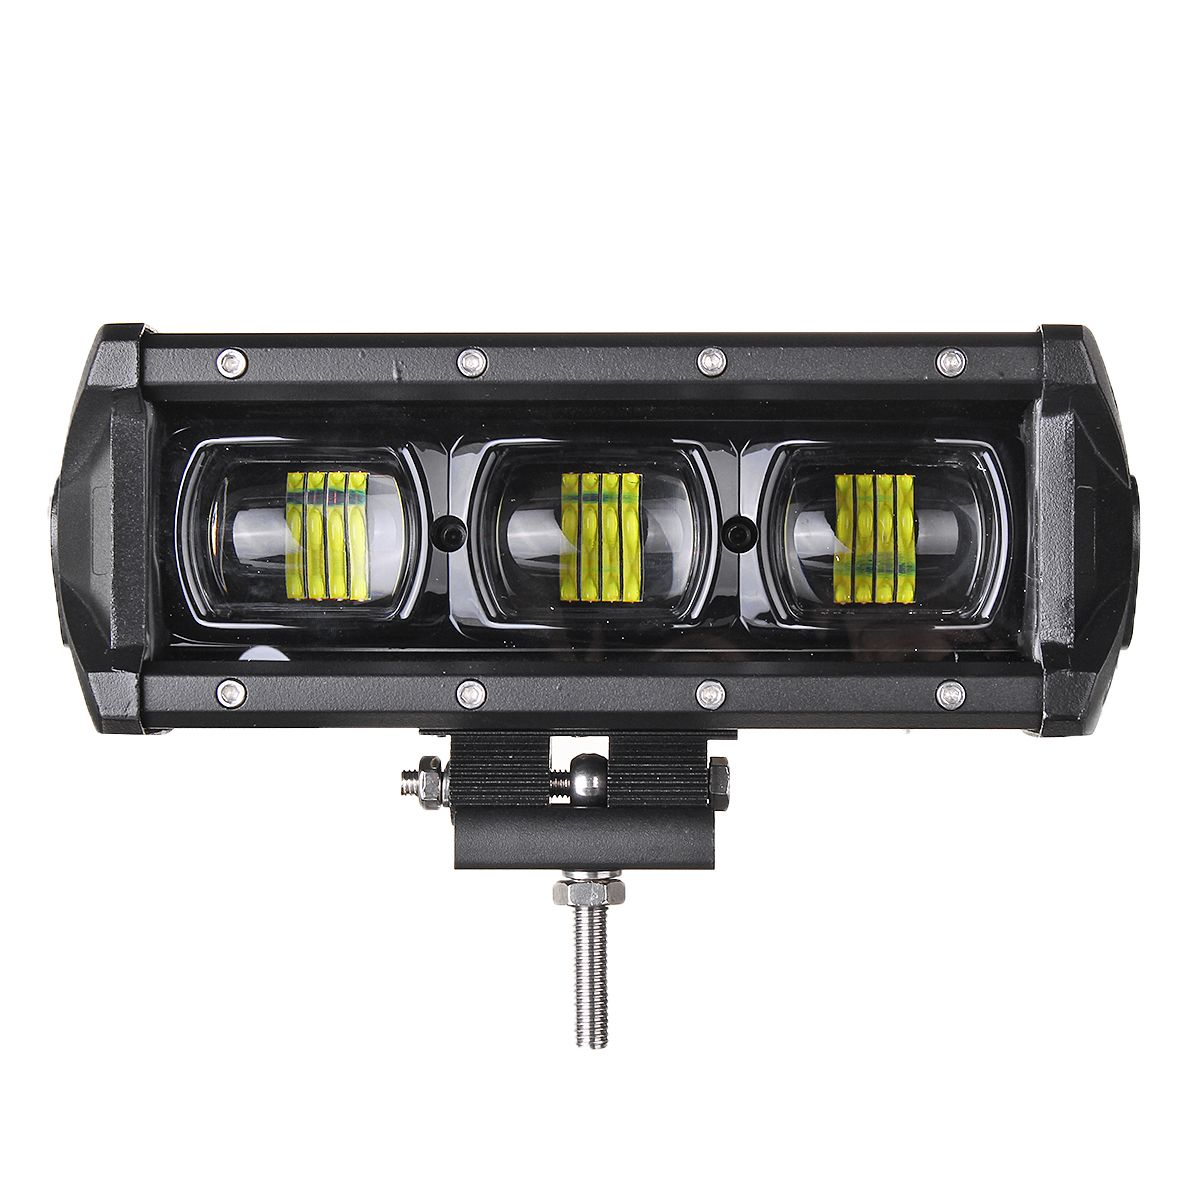 9-Inch-30W-LED-Work-Light-Bars-9D-Lens-Single-Row-6000K-9-32V-For-Off-Road-4WD-Trucks-SUV-ATV-Traile-1622048